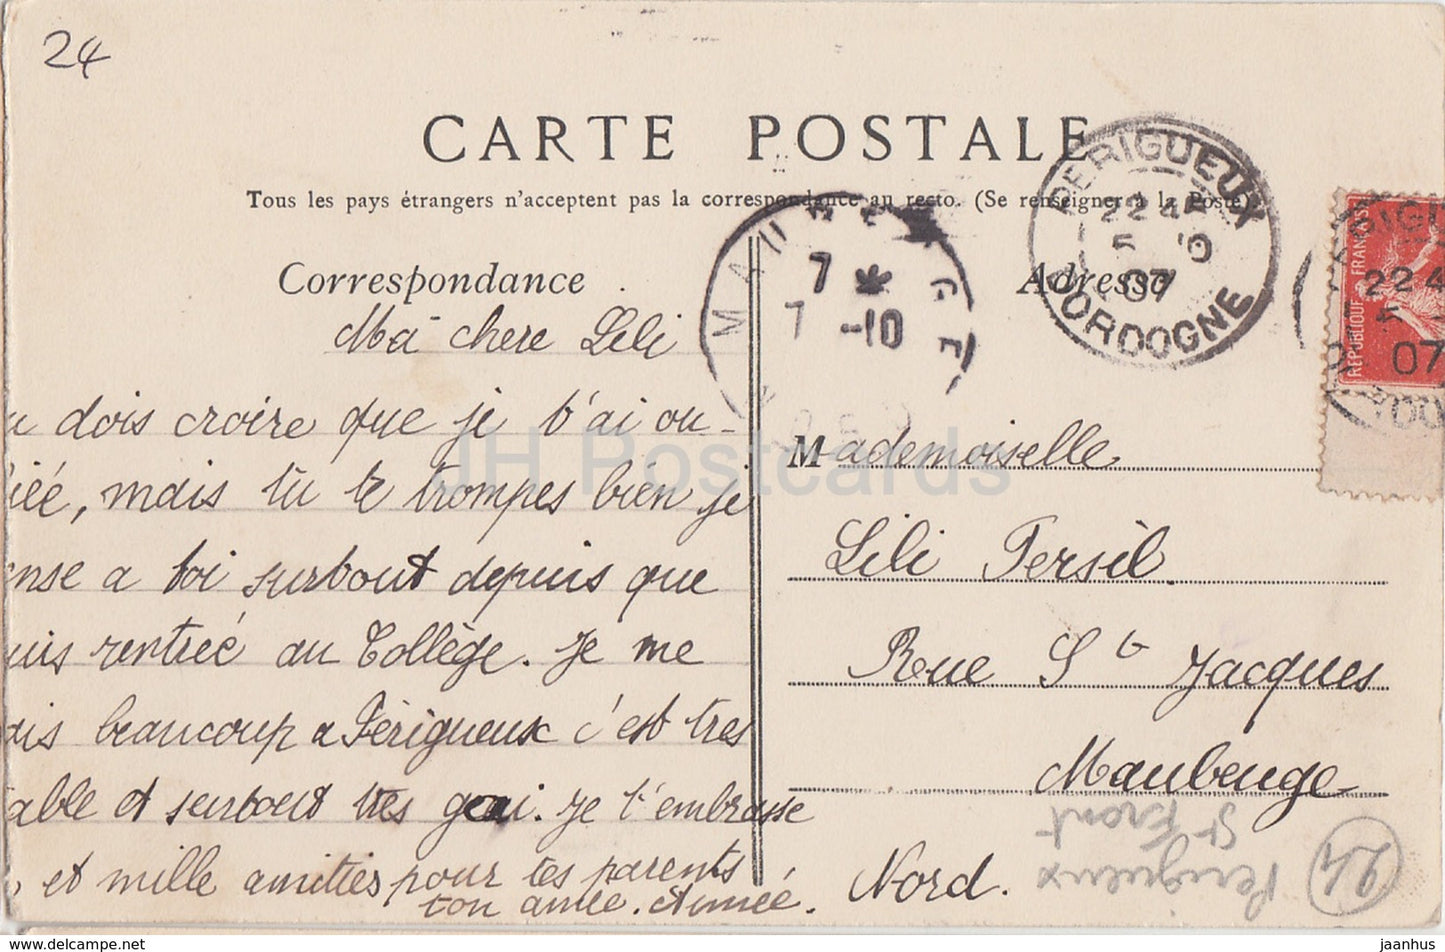 Périgueux - Basilique Saint Front - cathédrale - carte postale ancienne - 1907 - France - occasion